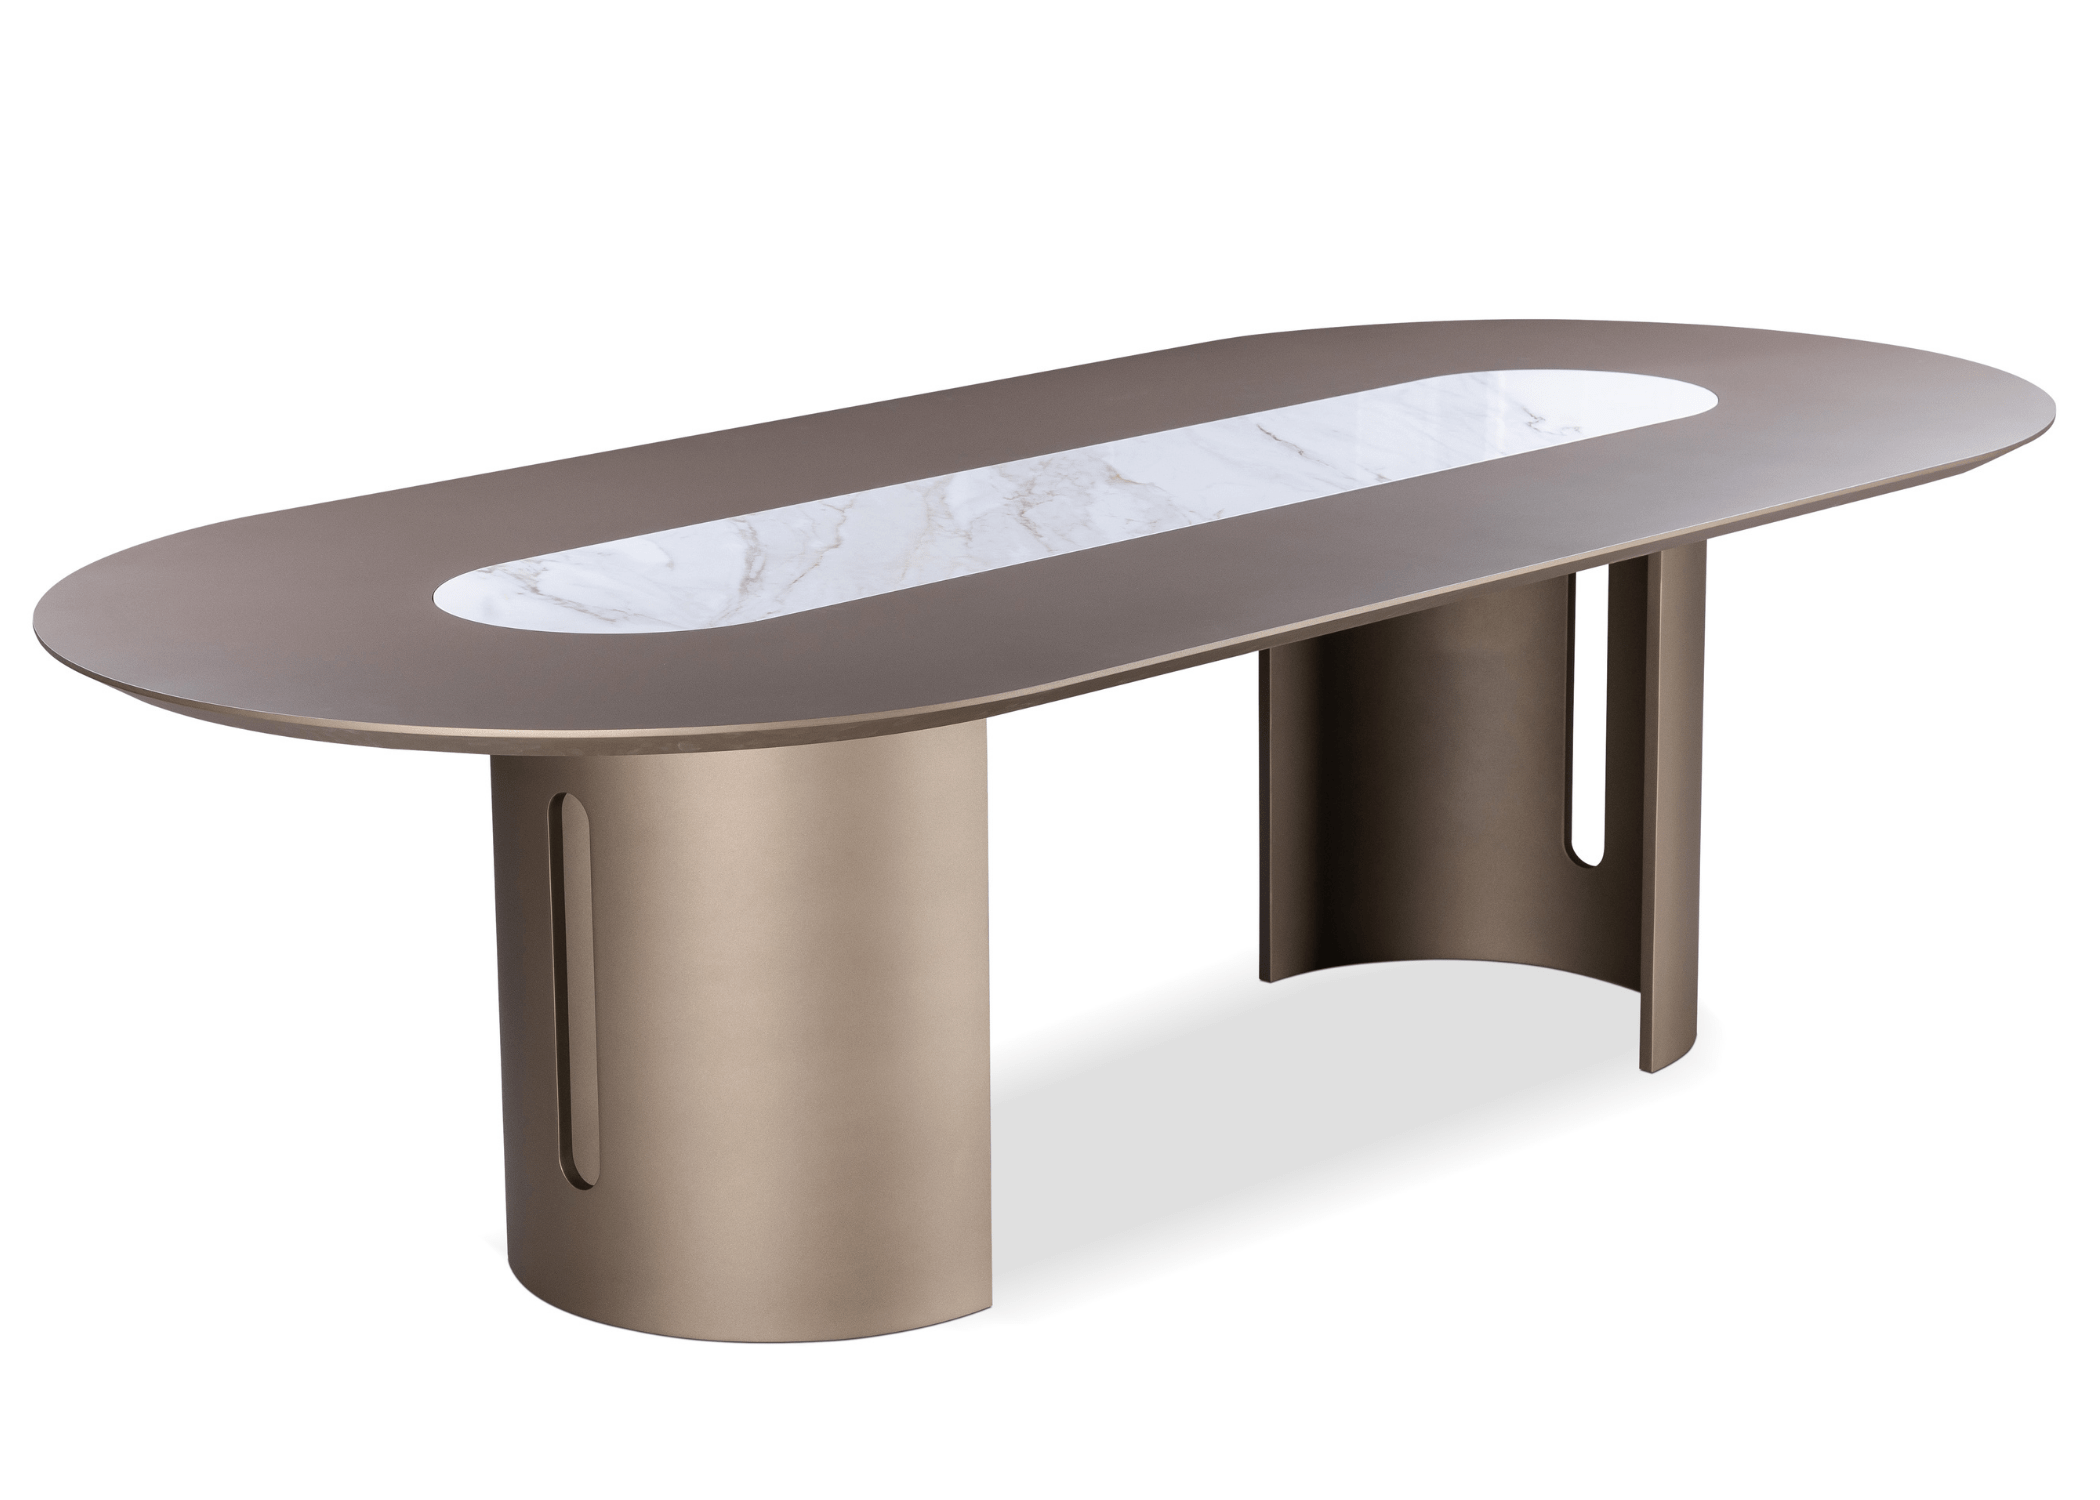 A mesa de jantar Duck I é uma peça excepcional que se destaca no universo do mobiliário, graças ao seu design sofisticado e inovador.